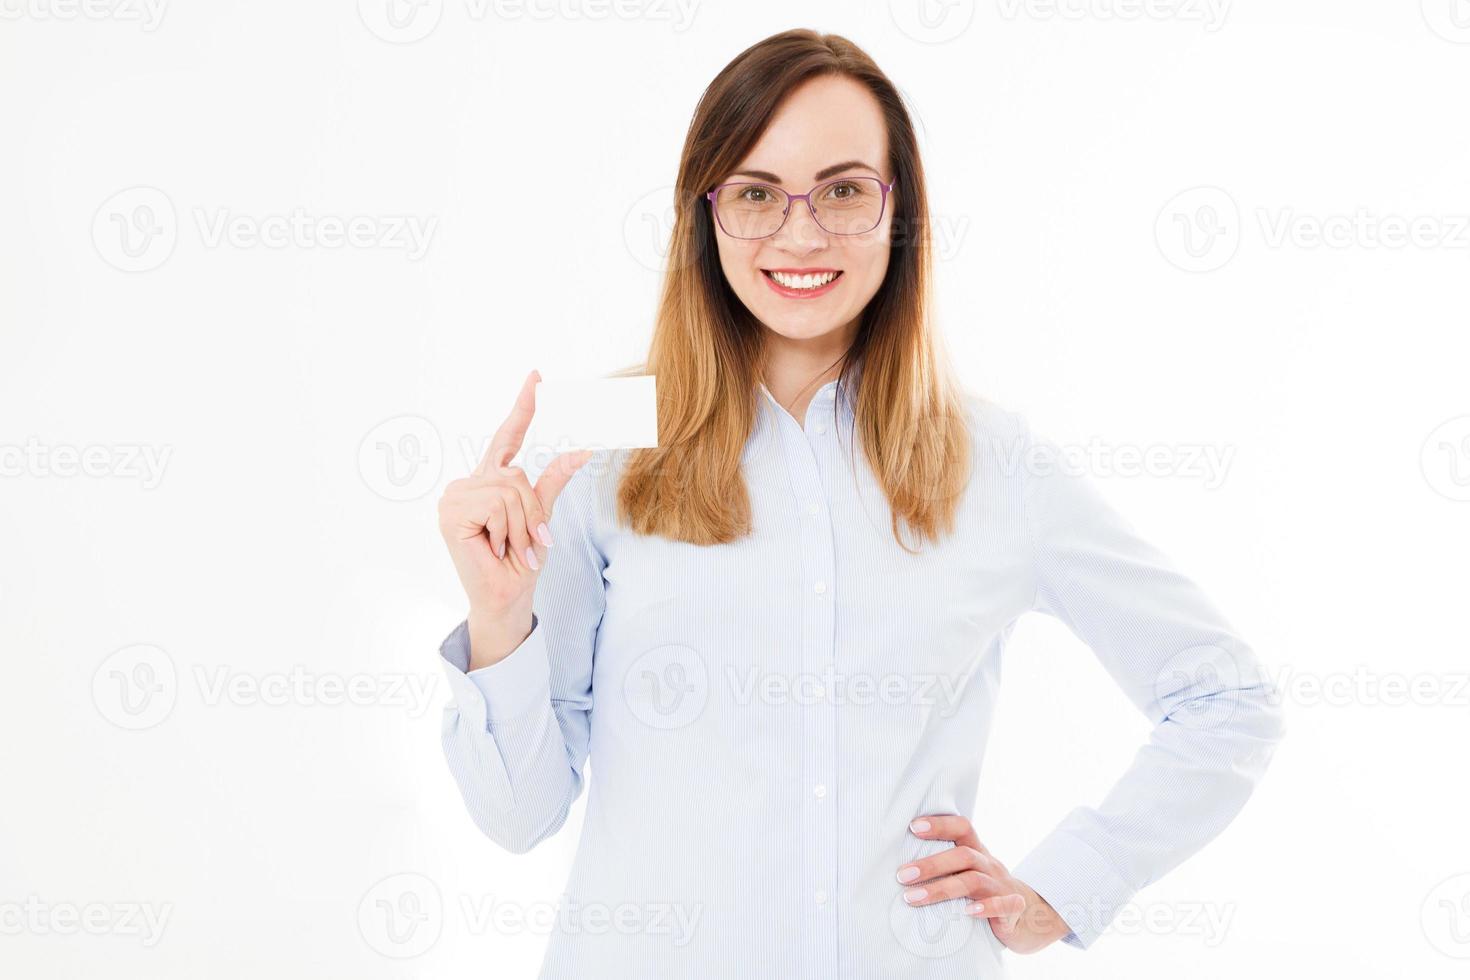 jonge lachende vrouw met een blanco visitekaartje geïsoleerd op een witte achtergrond. kopieer ruimte foto